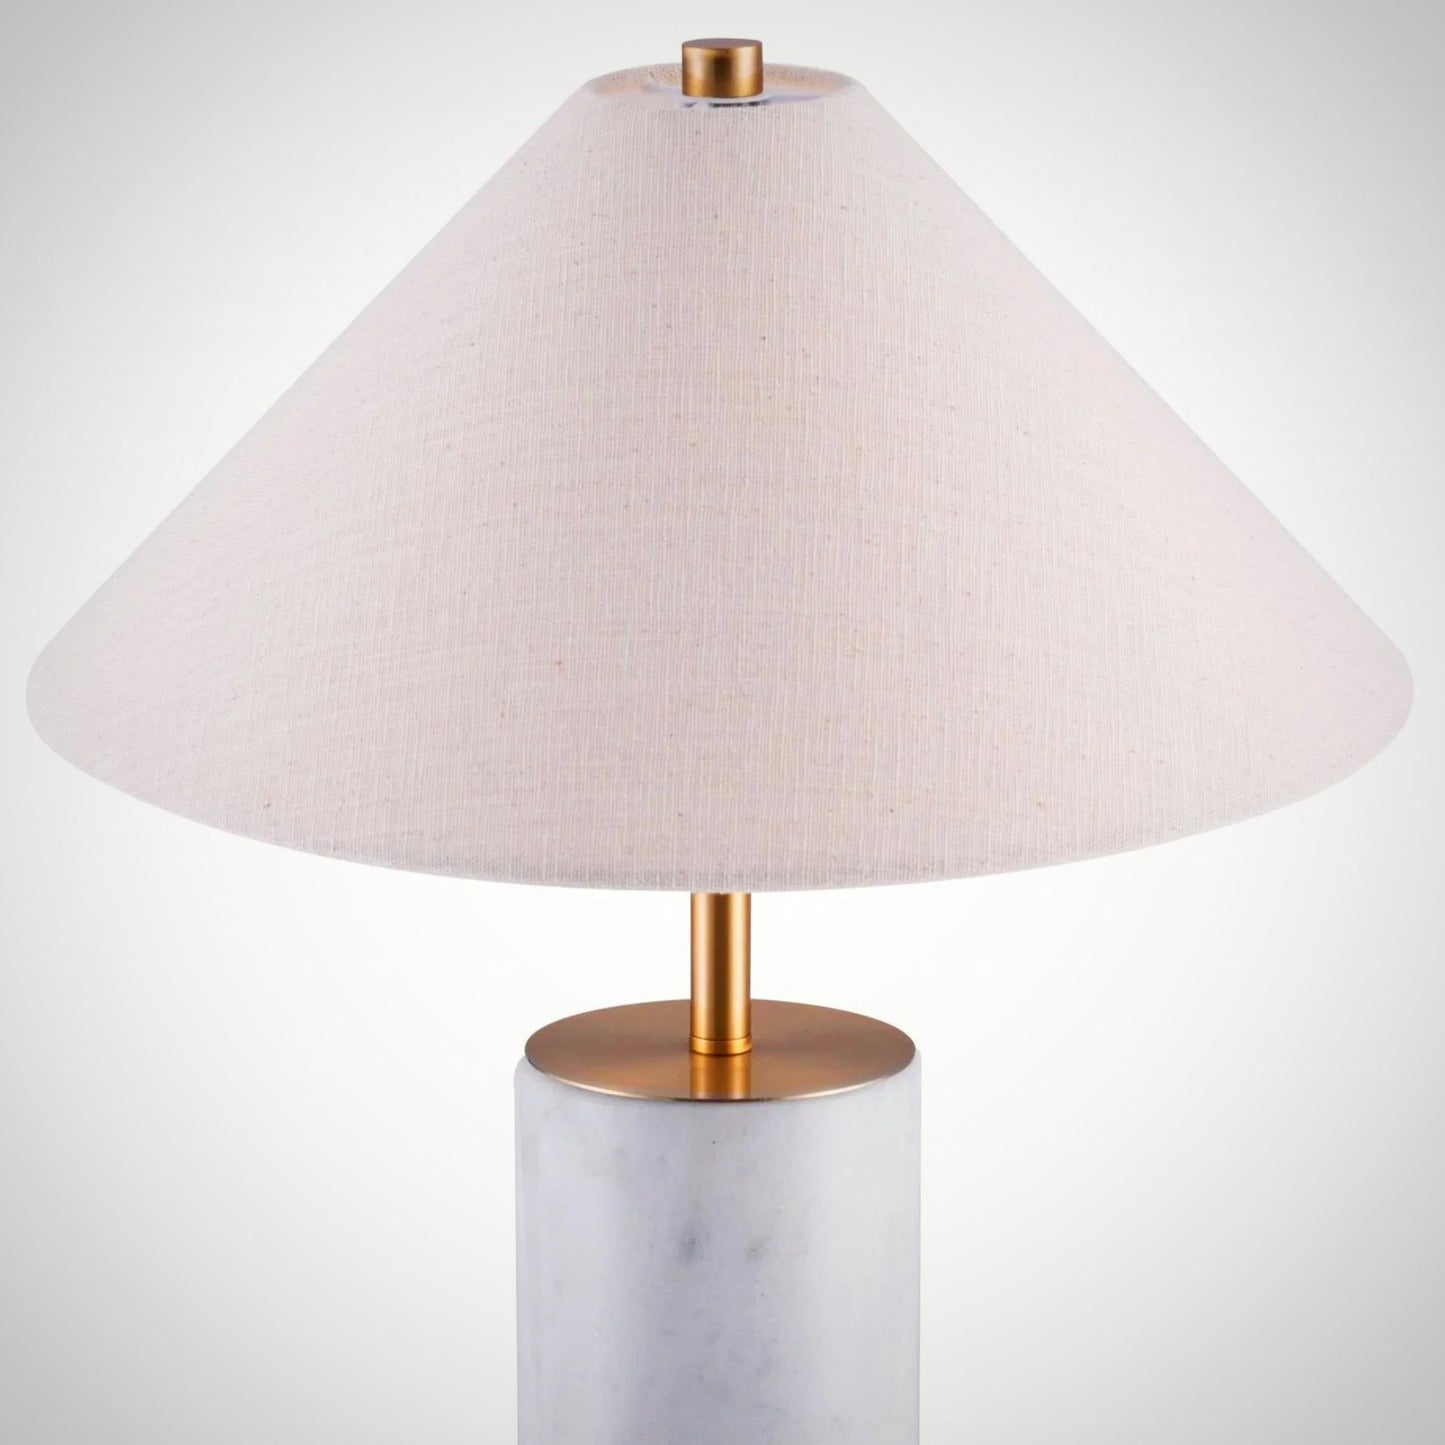 Empiny Lamp